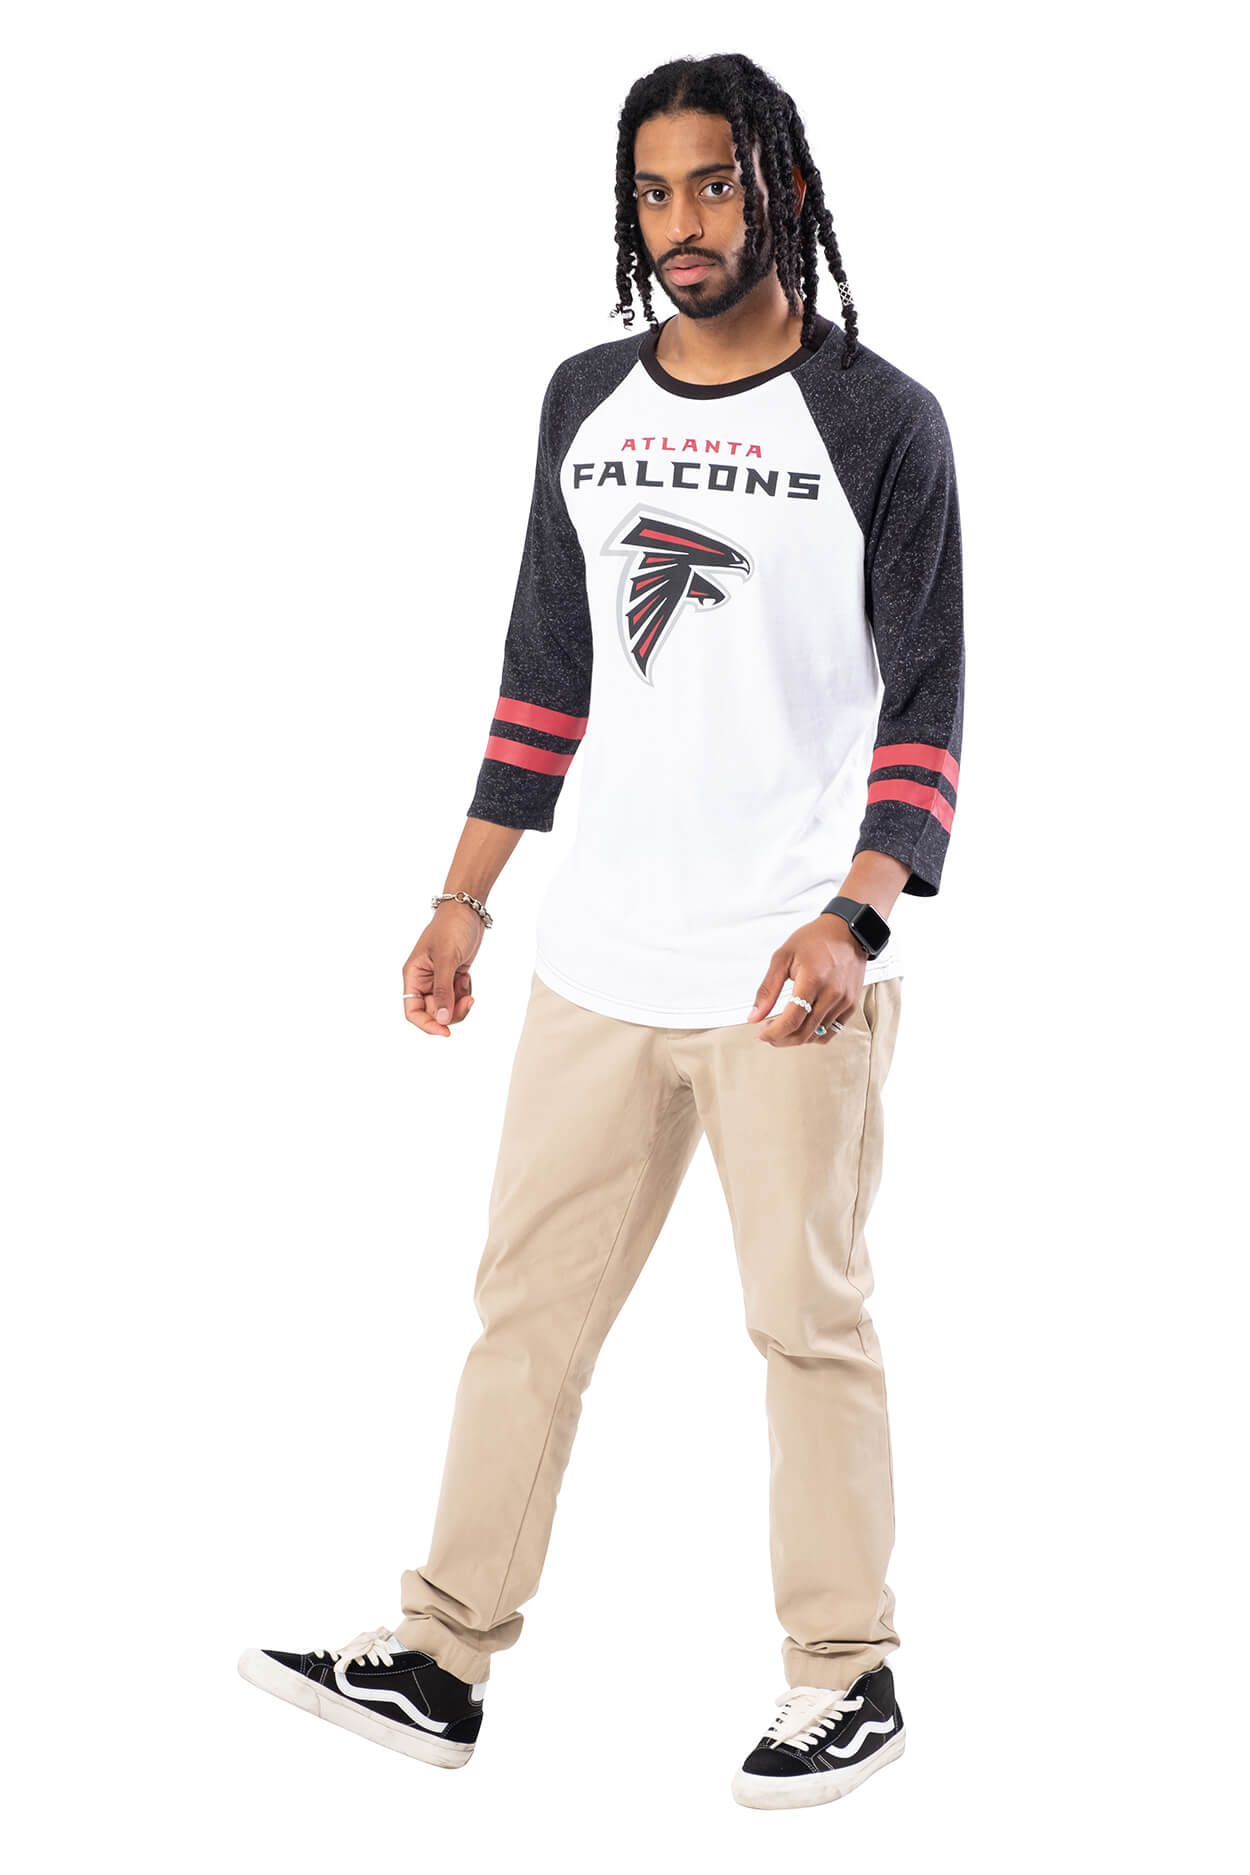 NFL Atlanta Falcons Men's Baseball Tee|Atlanta Falcons